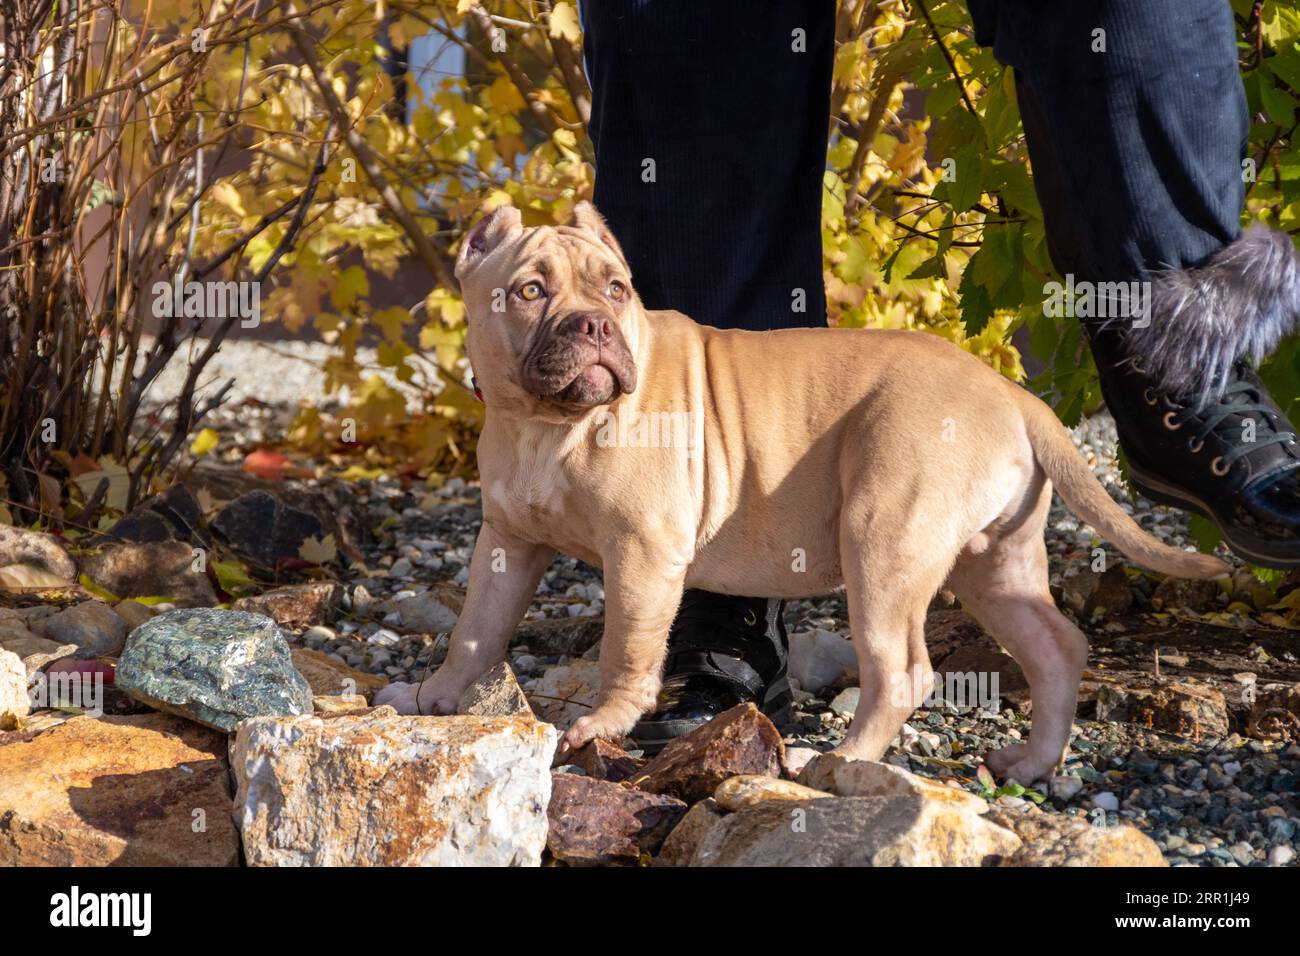 Porträt eines amerikanischen Bully-Welpen, der neben dem Besitzer, Züchter, Betreuer sitzt. Herbstspaziergang mit einem Hund auf der Straße. Hundegehorsamstraining. Stockfoto